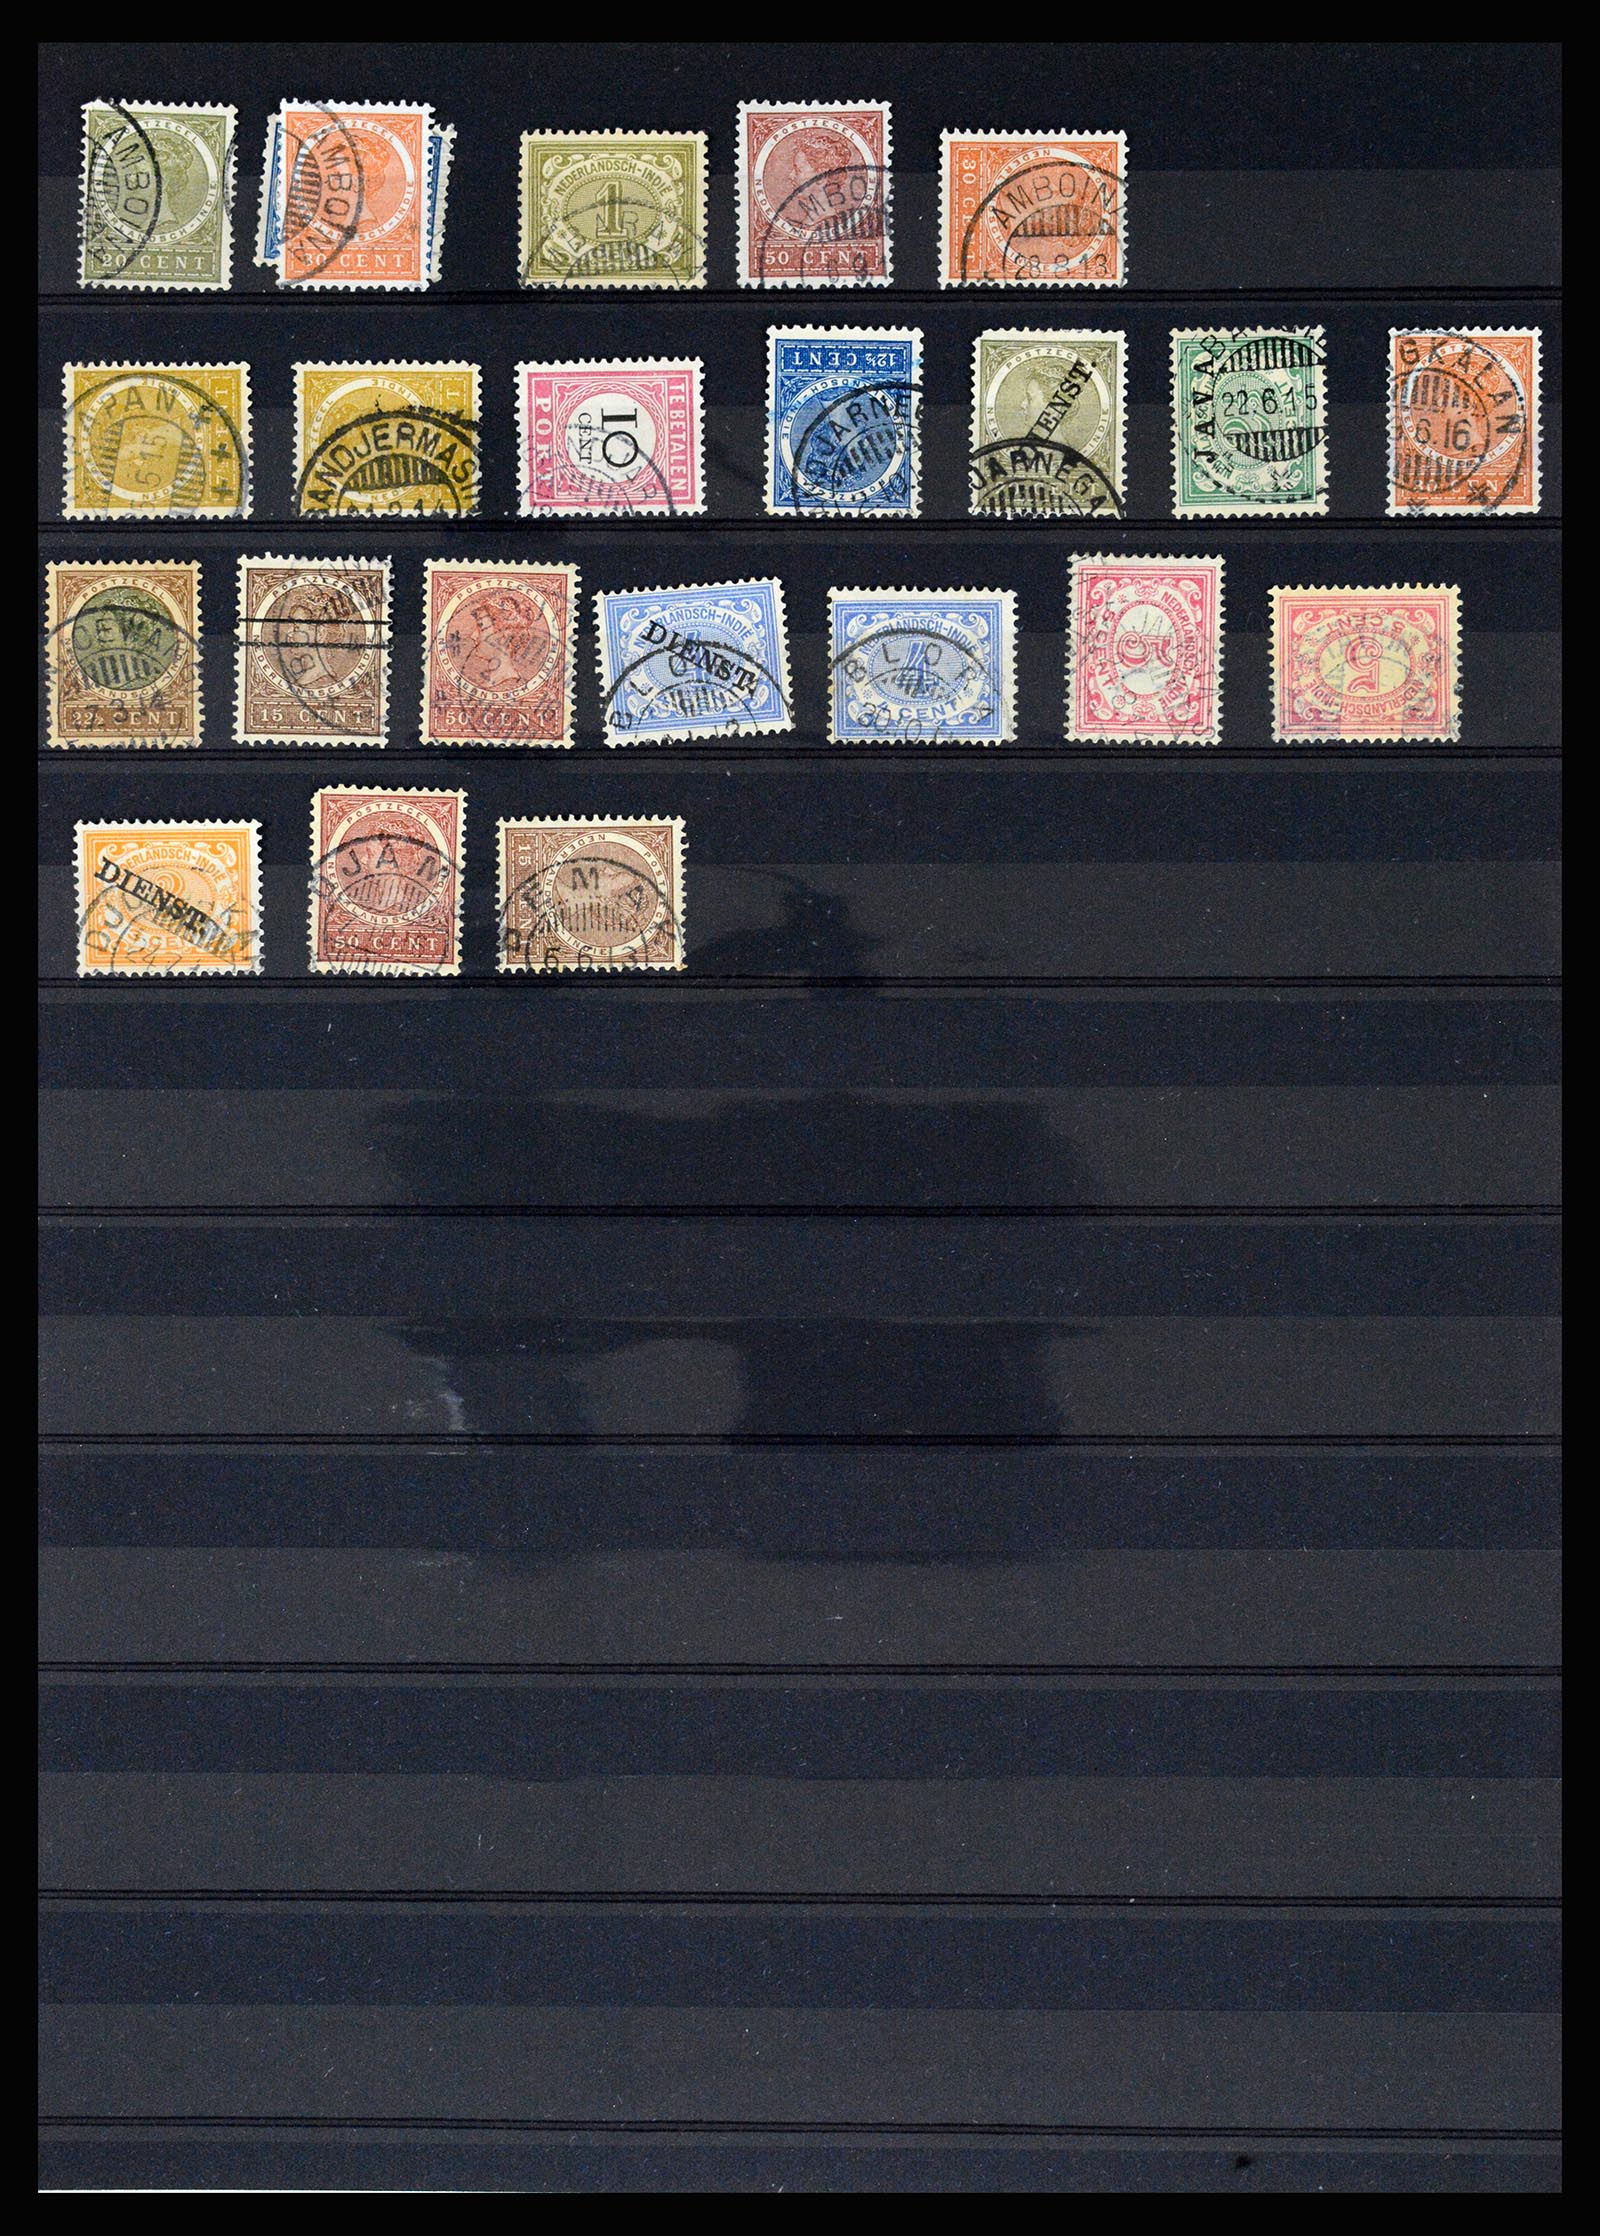 36512 079 - Stamp collection 36512 Nederlands Indië stempels 1872-1930.